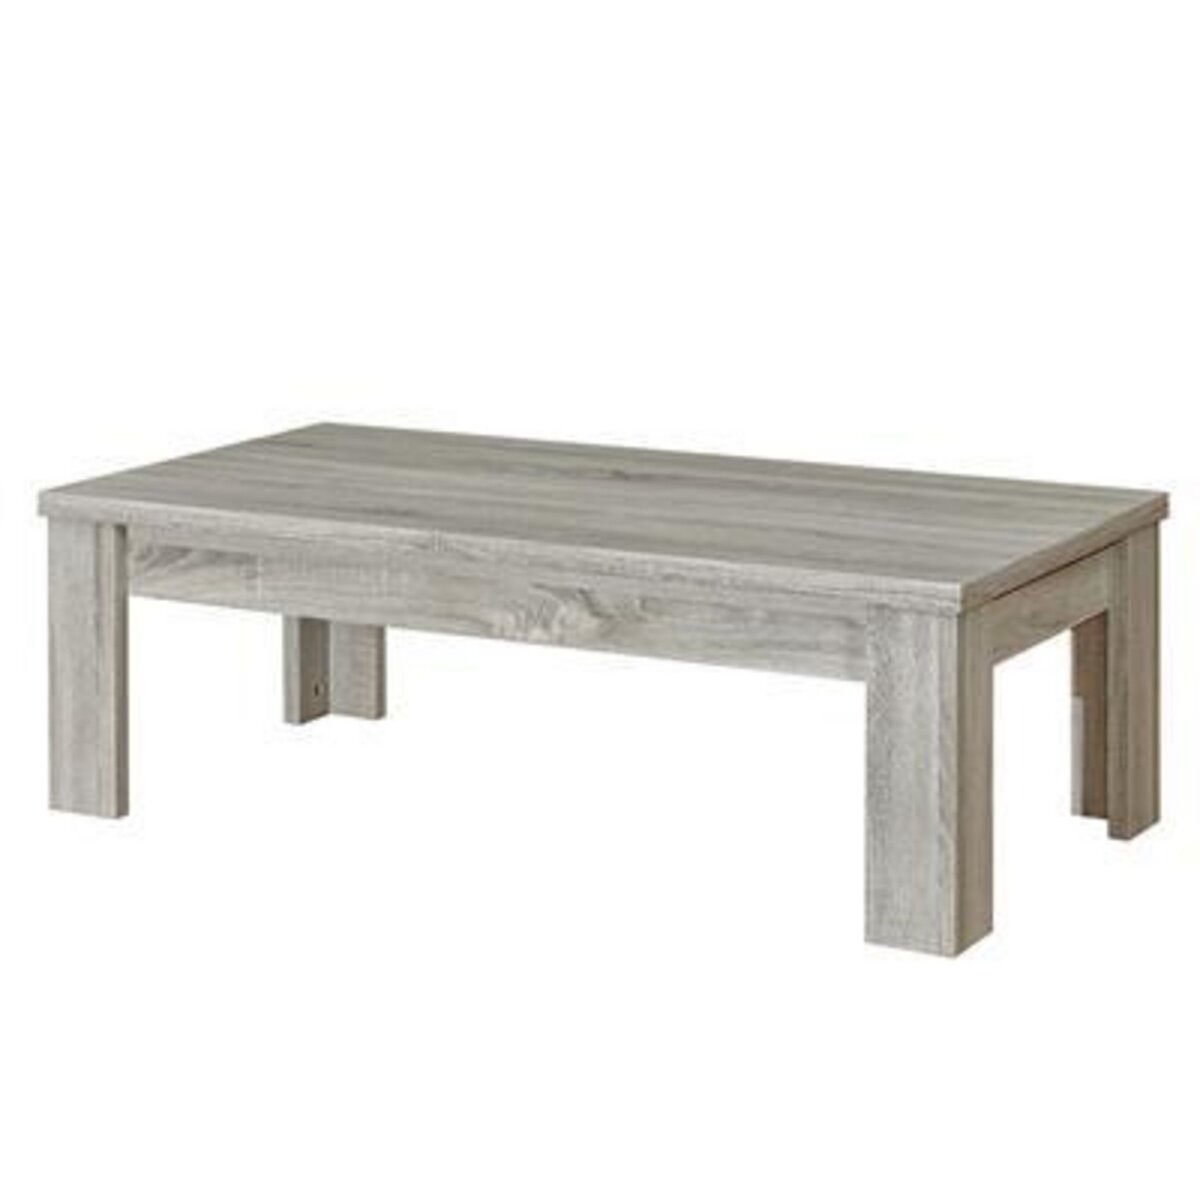 KASALINEA Table basse 120 cm pas chère couleur chêne gris ENOA-L 120 x P 59 x H 40 cm- Gris